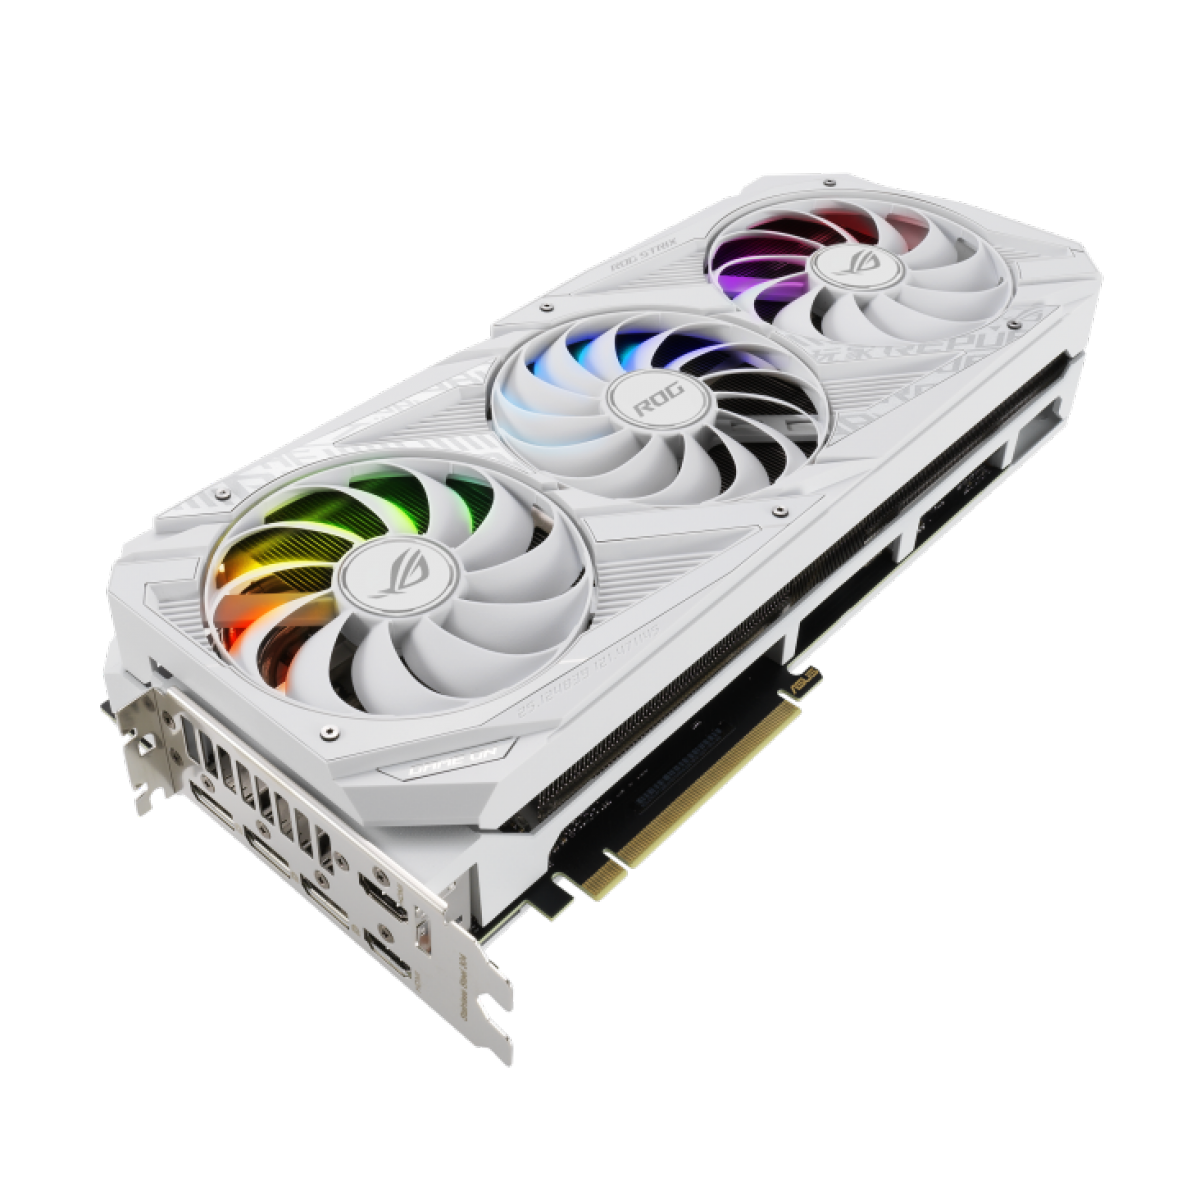 Placa de Vídeo Asus, ROG Strix, Geforce RTX 3080, White Edition, 10GB, GDDR6X, 320bit, ROG-STRIX-RTX3080-10G-WHITE